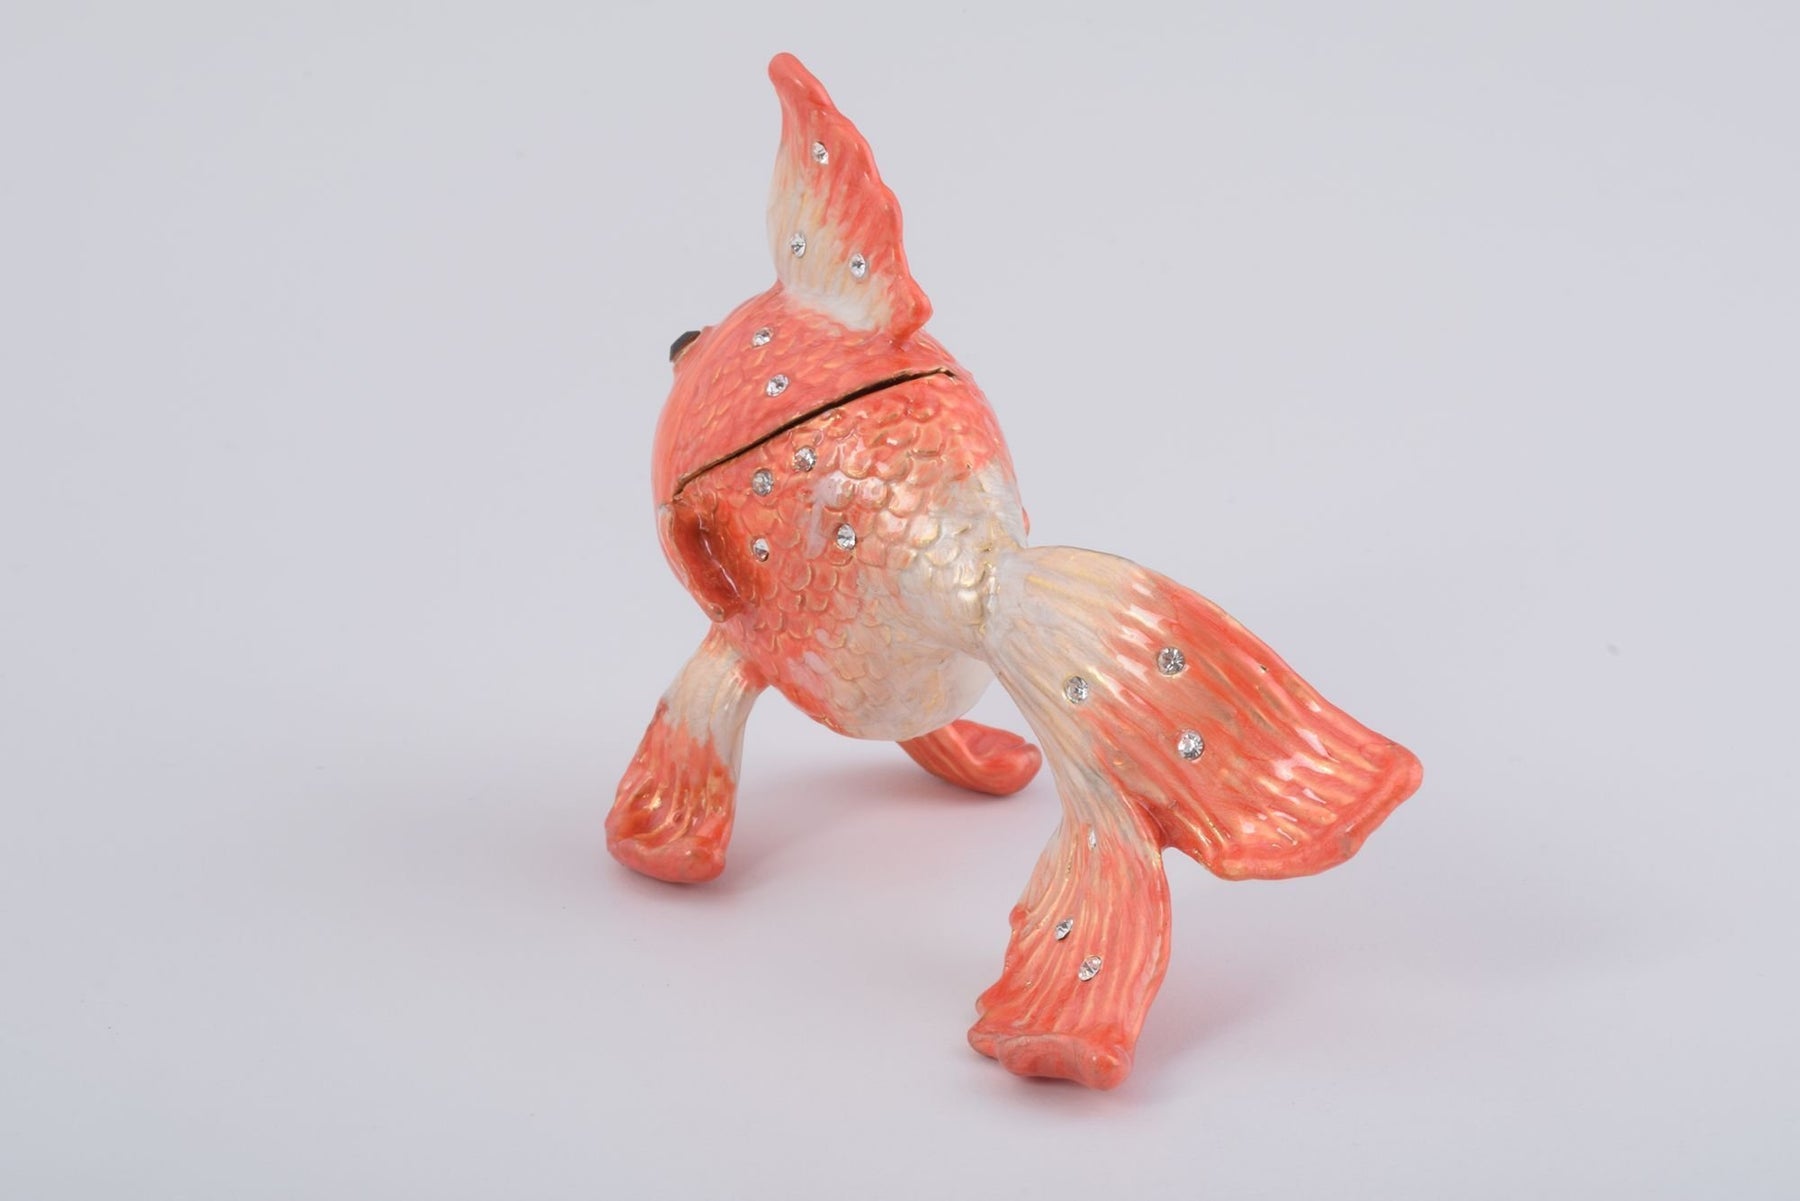 Keren Kopal Pink Betta Fish  49.50